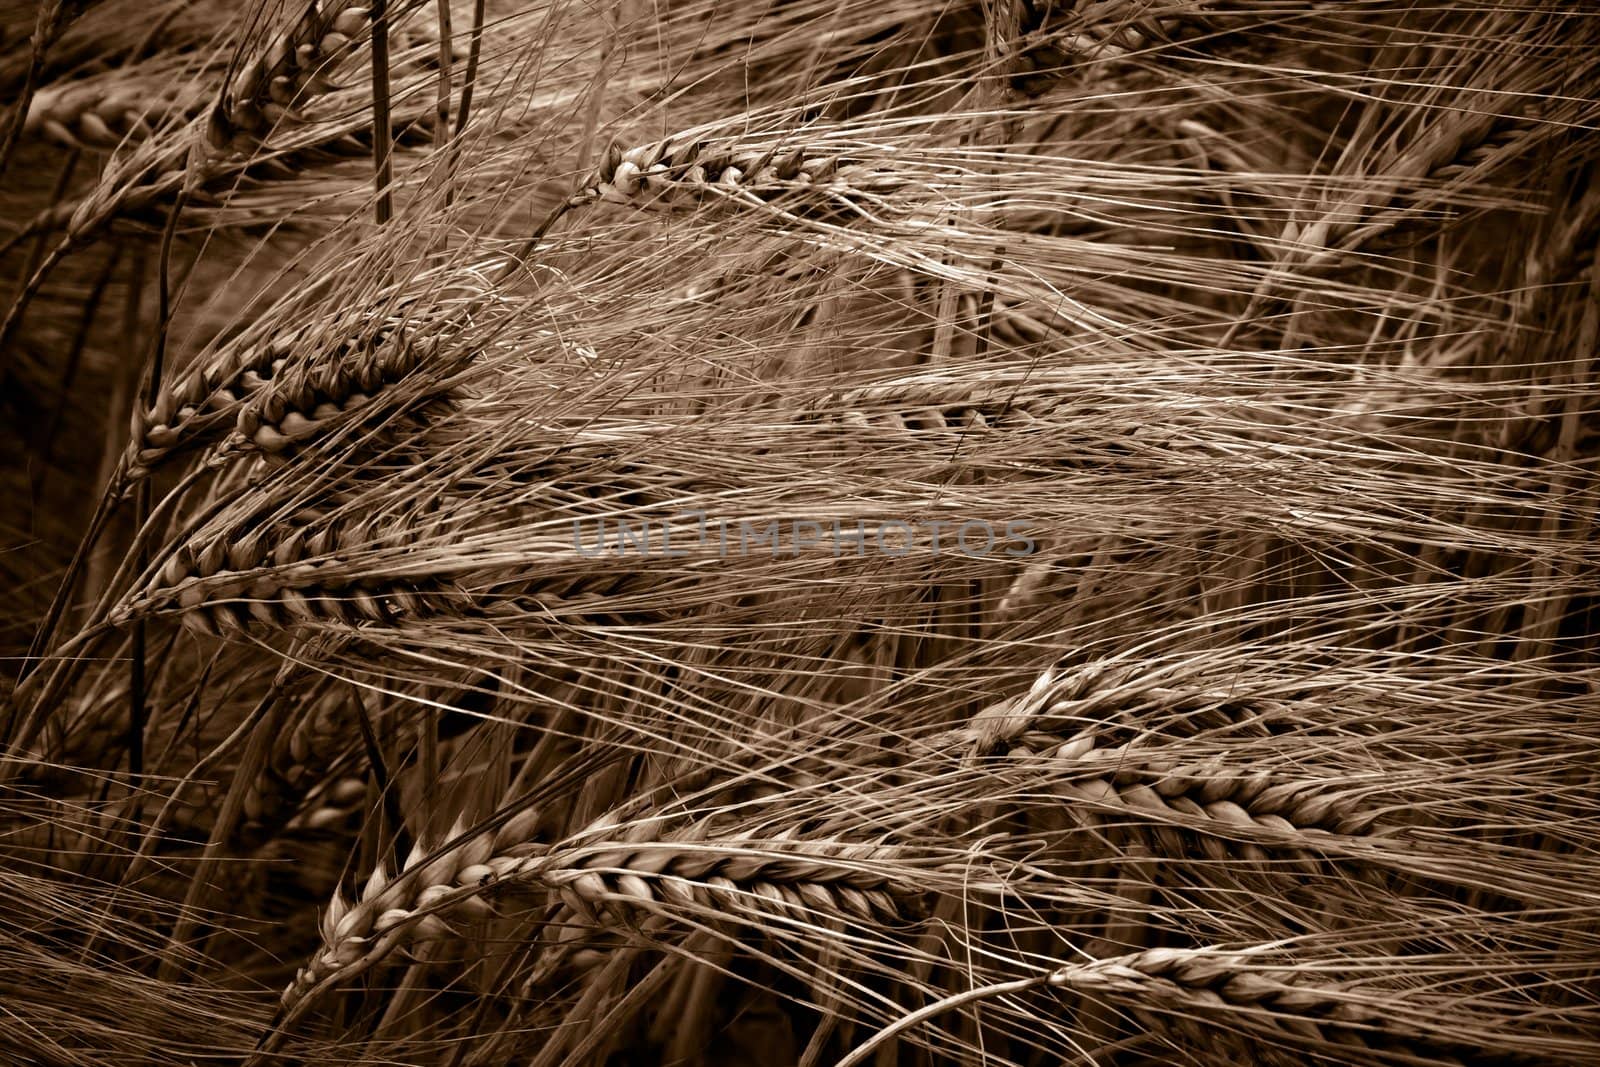 wheat field by chrisroll